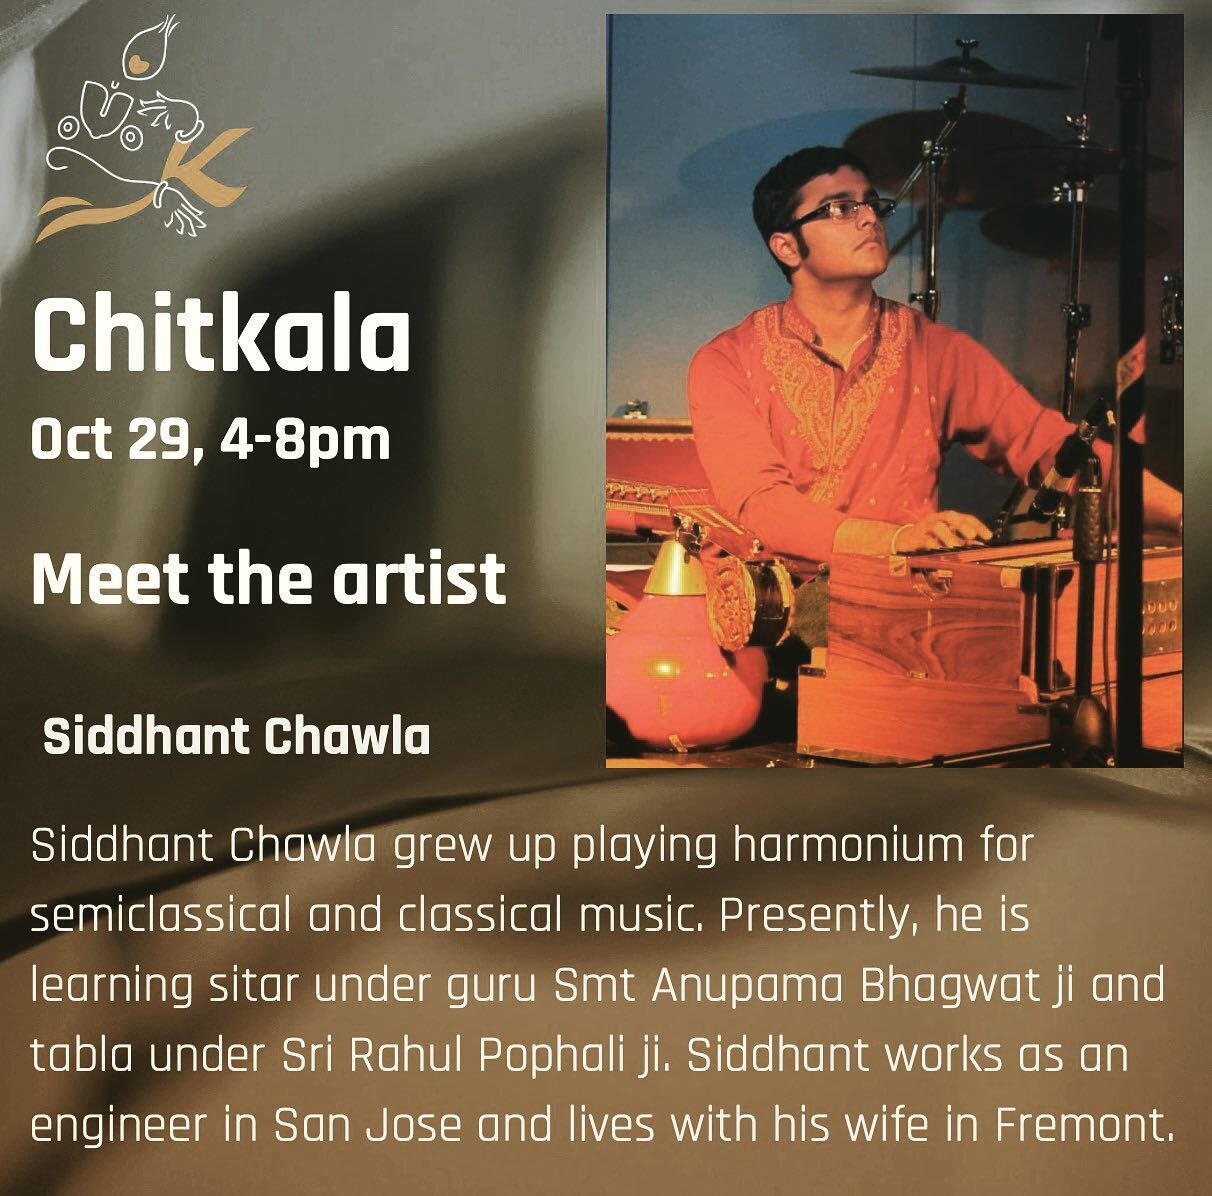 Looking forward to watching Siddhant play tonight at Chitkala!!